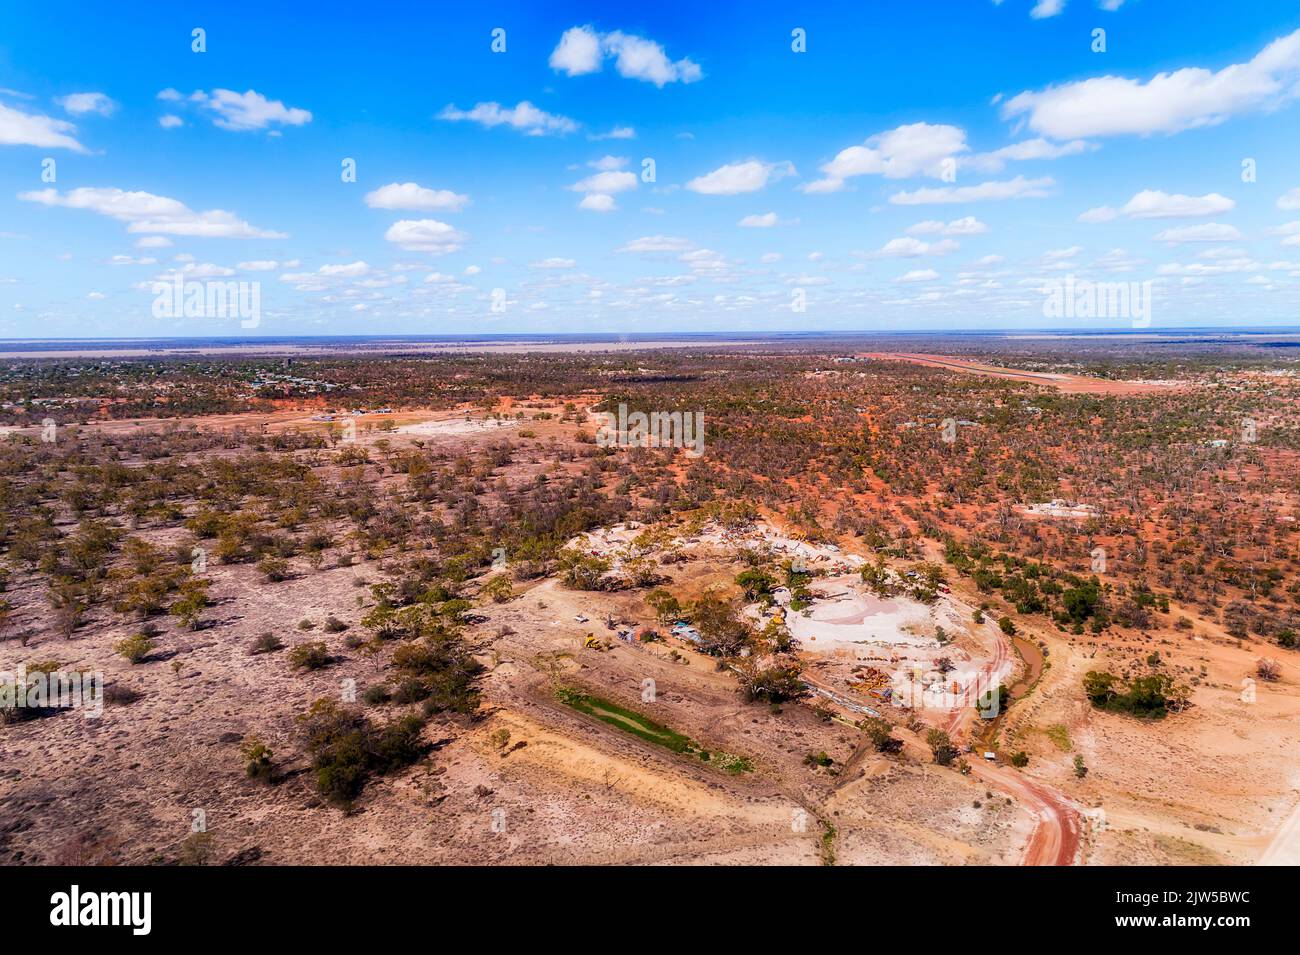 Llanuras planas de suelo rojo del Outback de Australia en torno a la cresta del rayo de las minas de ópalo. Foto de stock